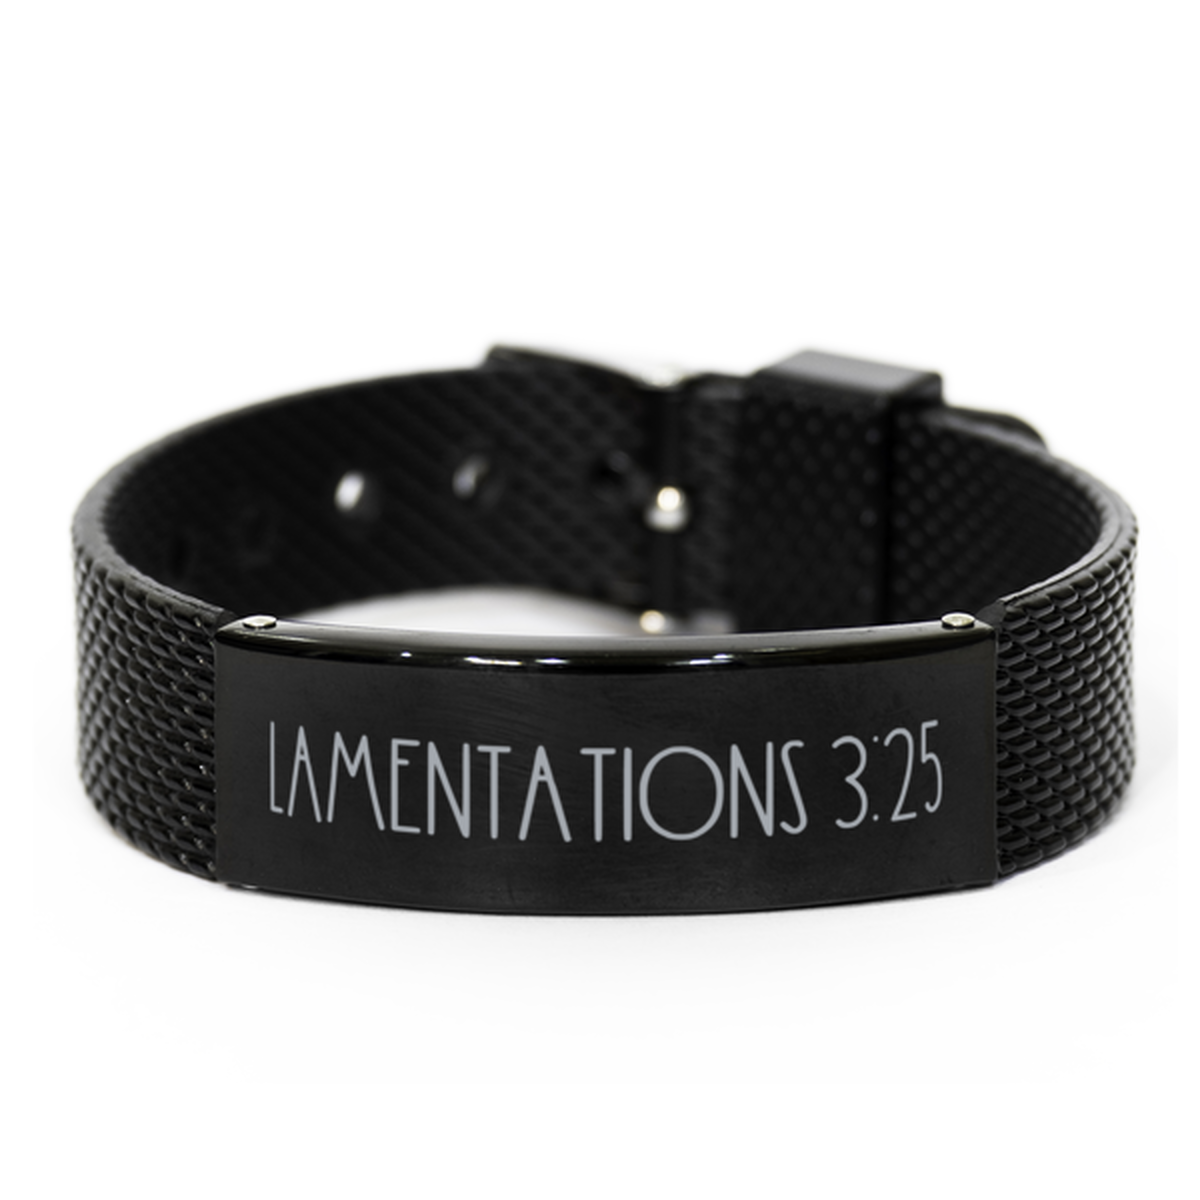 Bible Verse Bracelet, Lamentations 3 25 Bracelet, Christian Bracelet, Christian Birthday Gift, Black Stainless Steel Leather Bracelet, Gift for Christian.